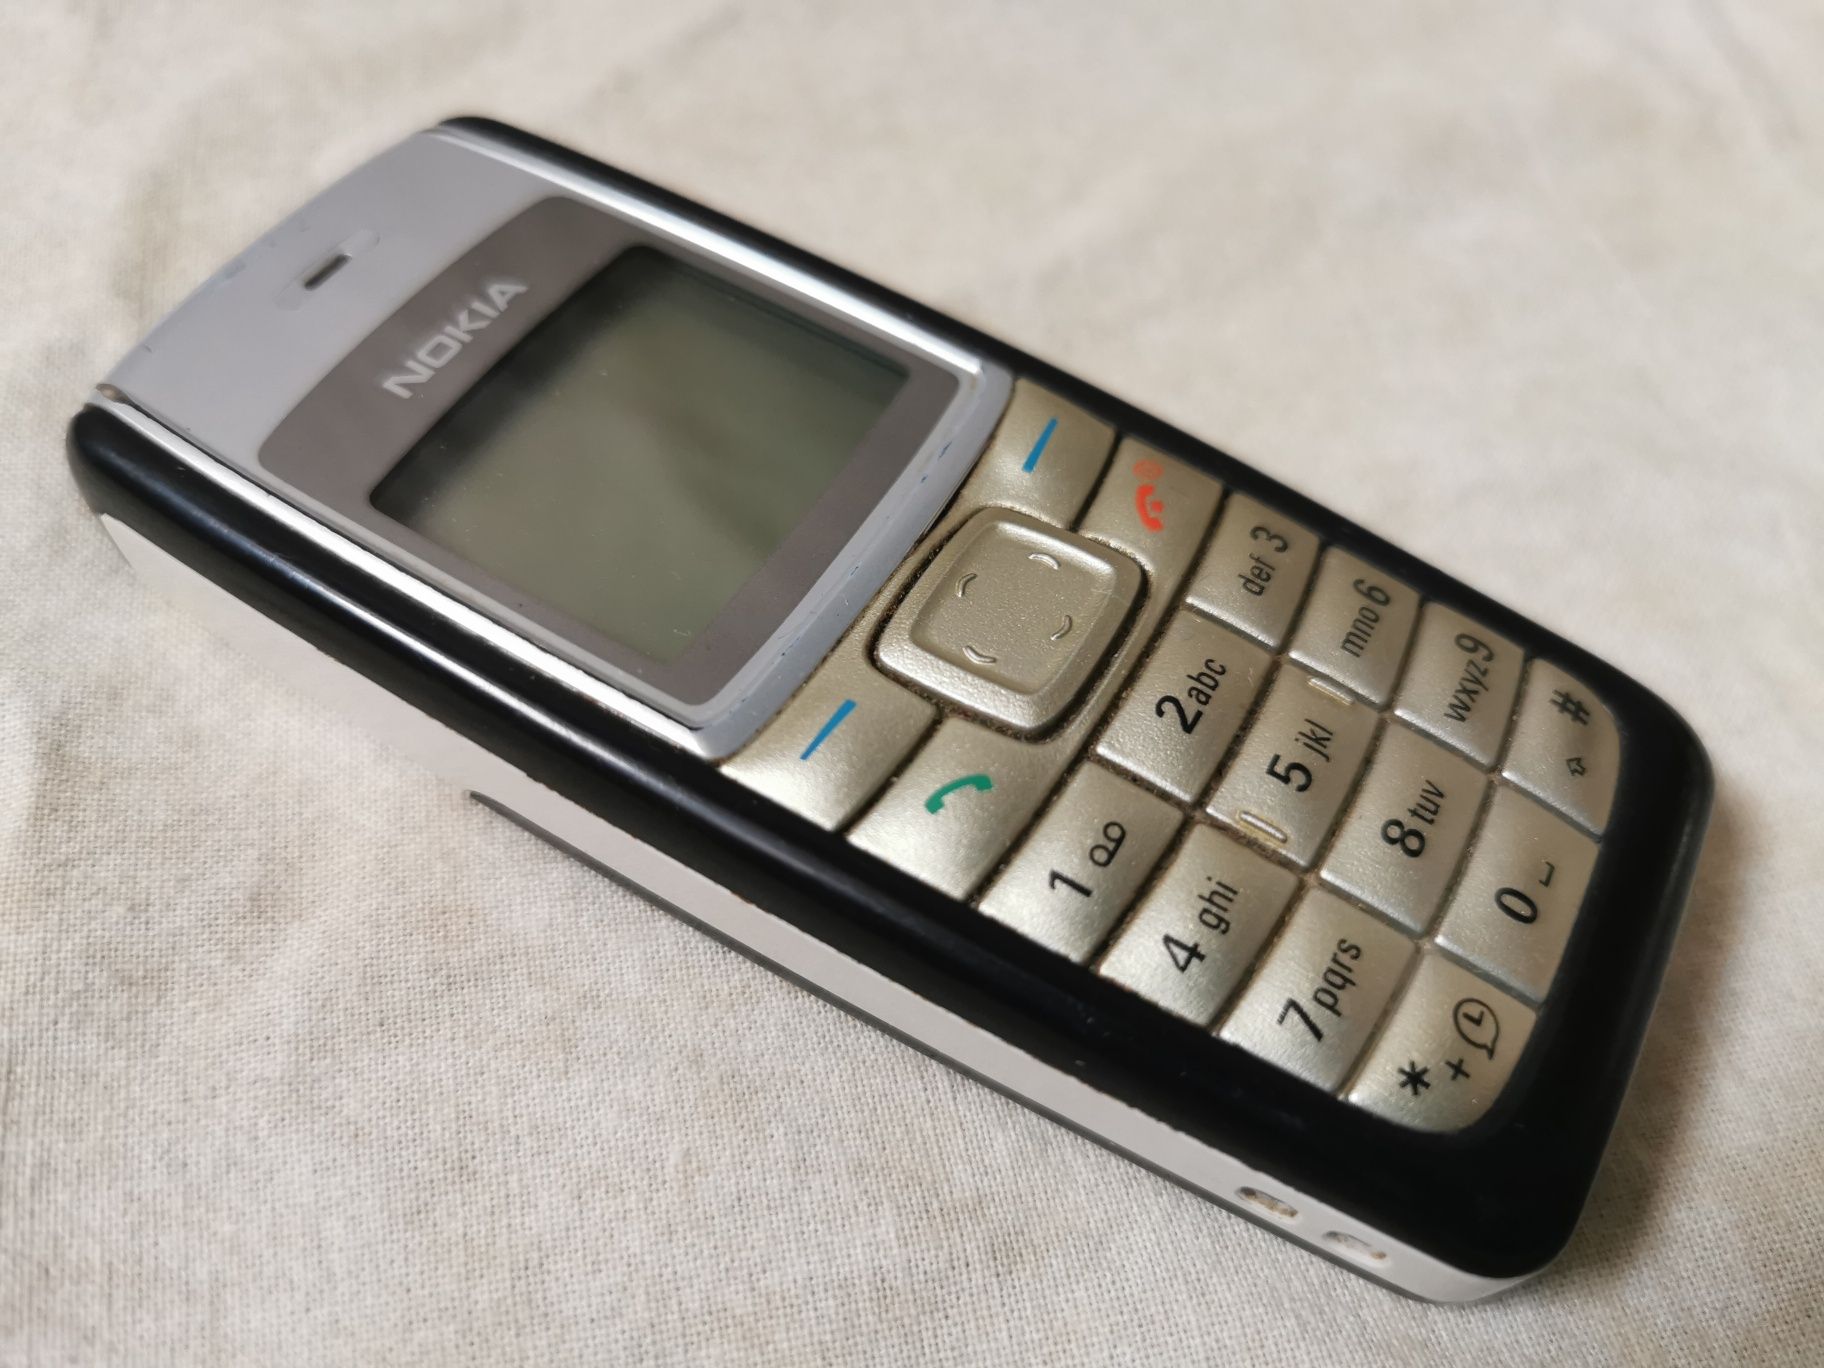 Telefon Nokia 1110i RH-93